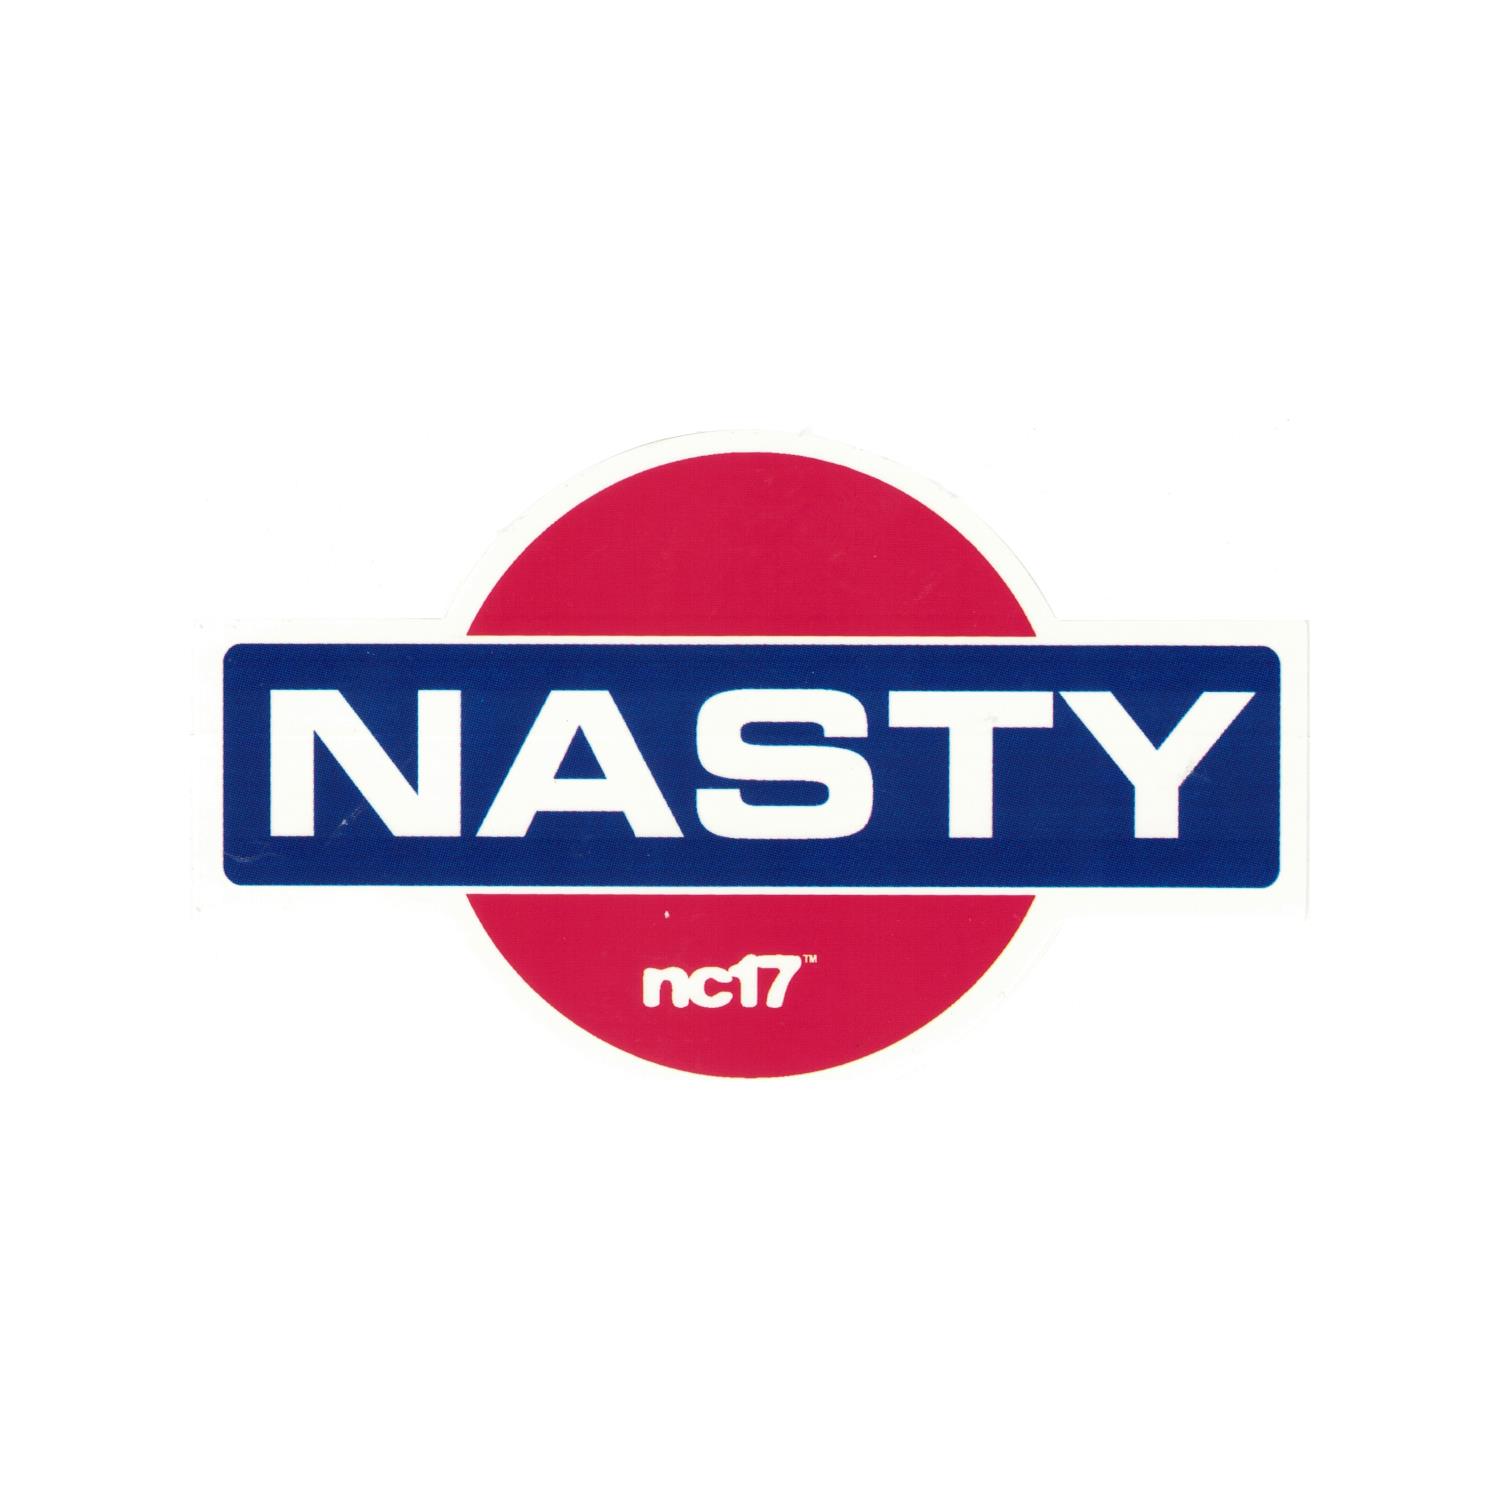 nc17 Nissan Nasty